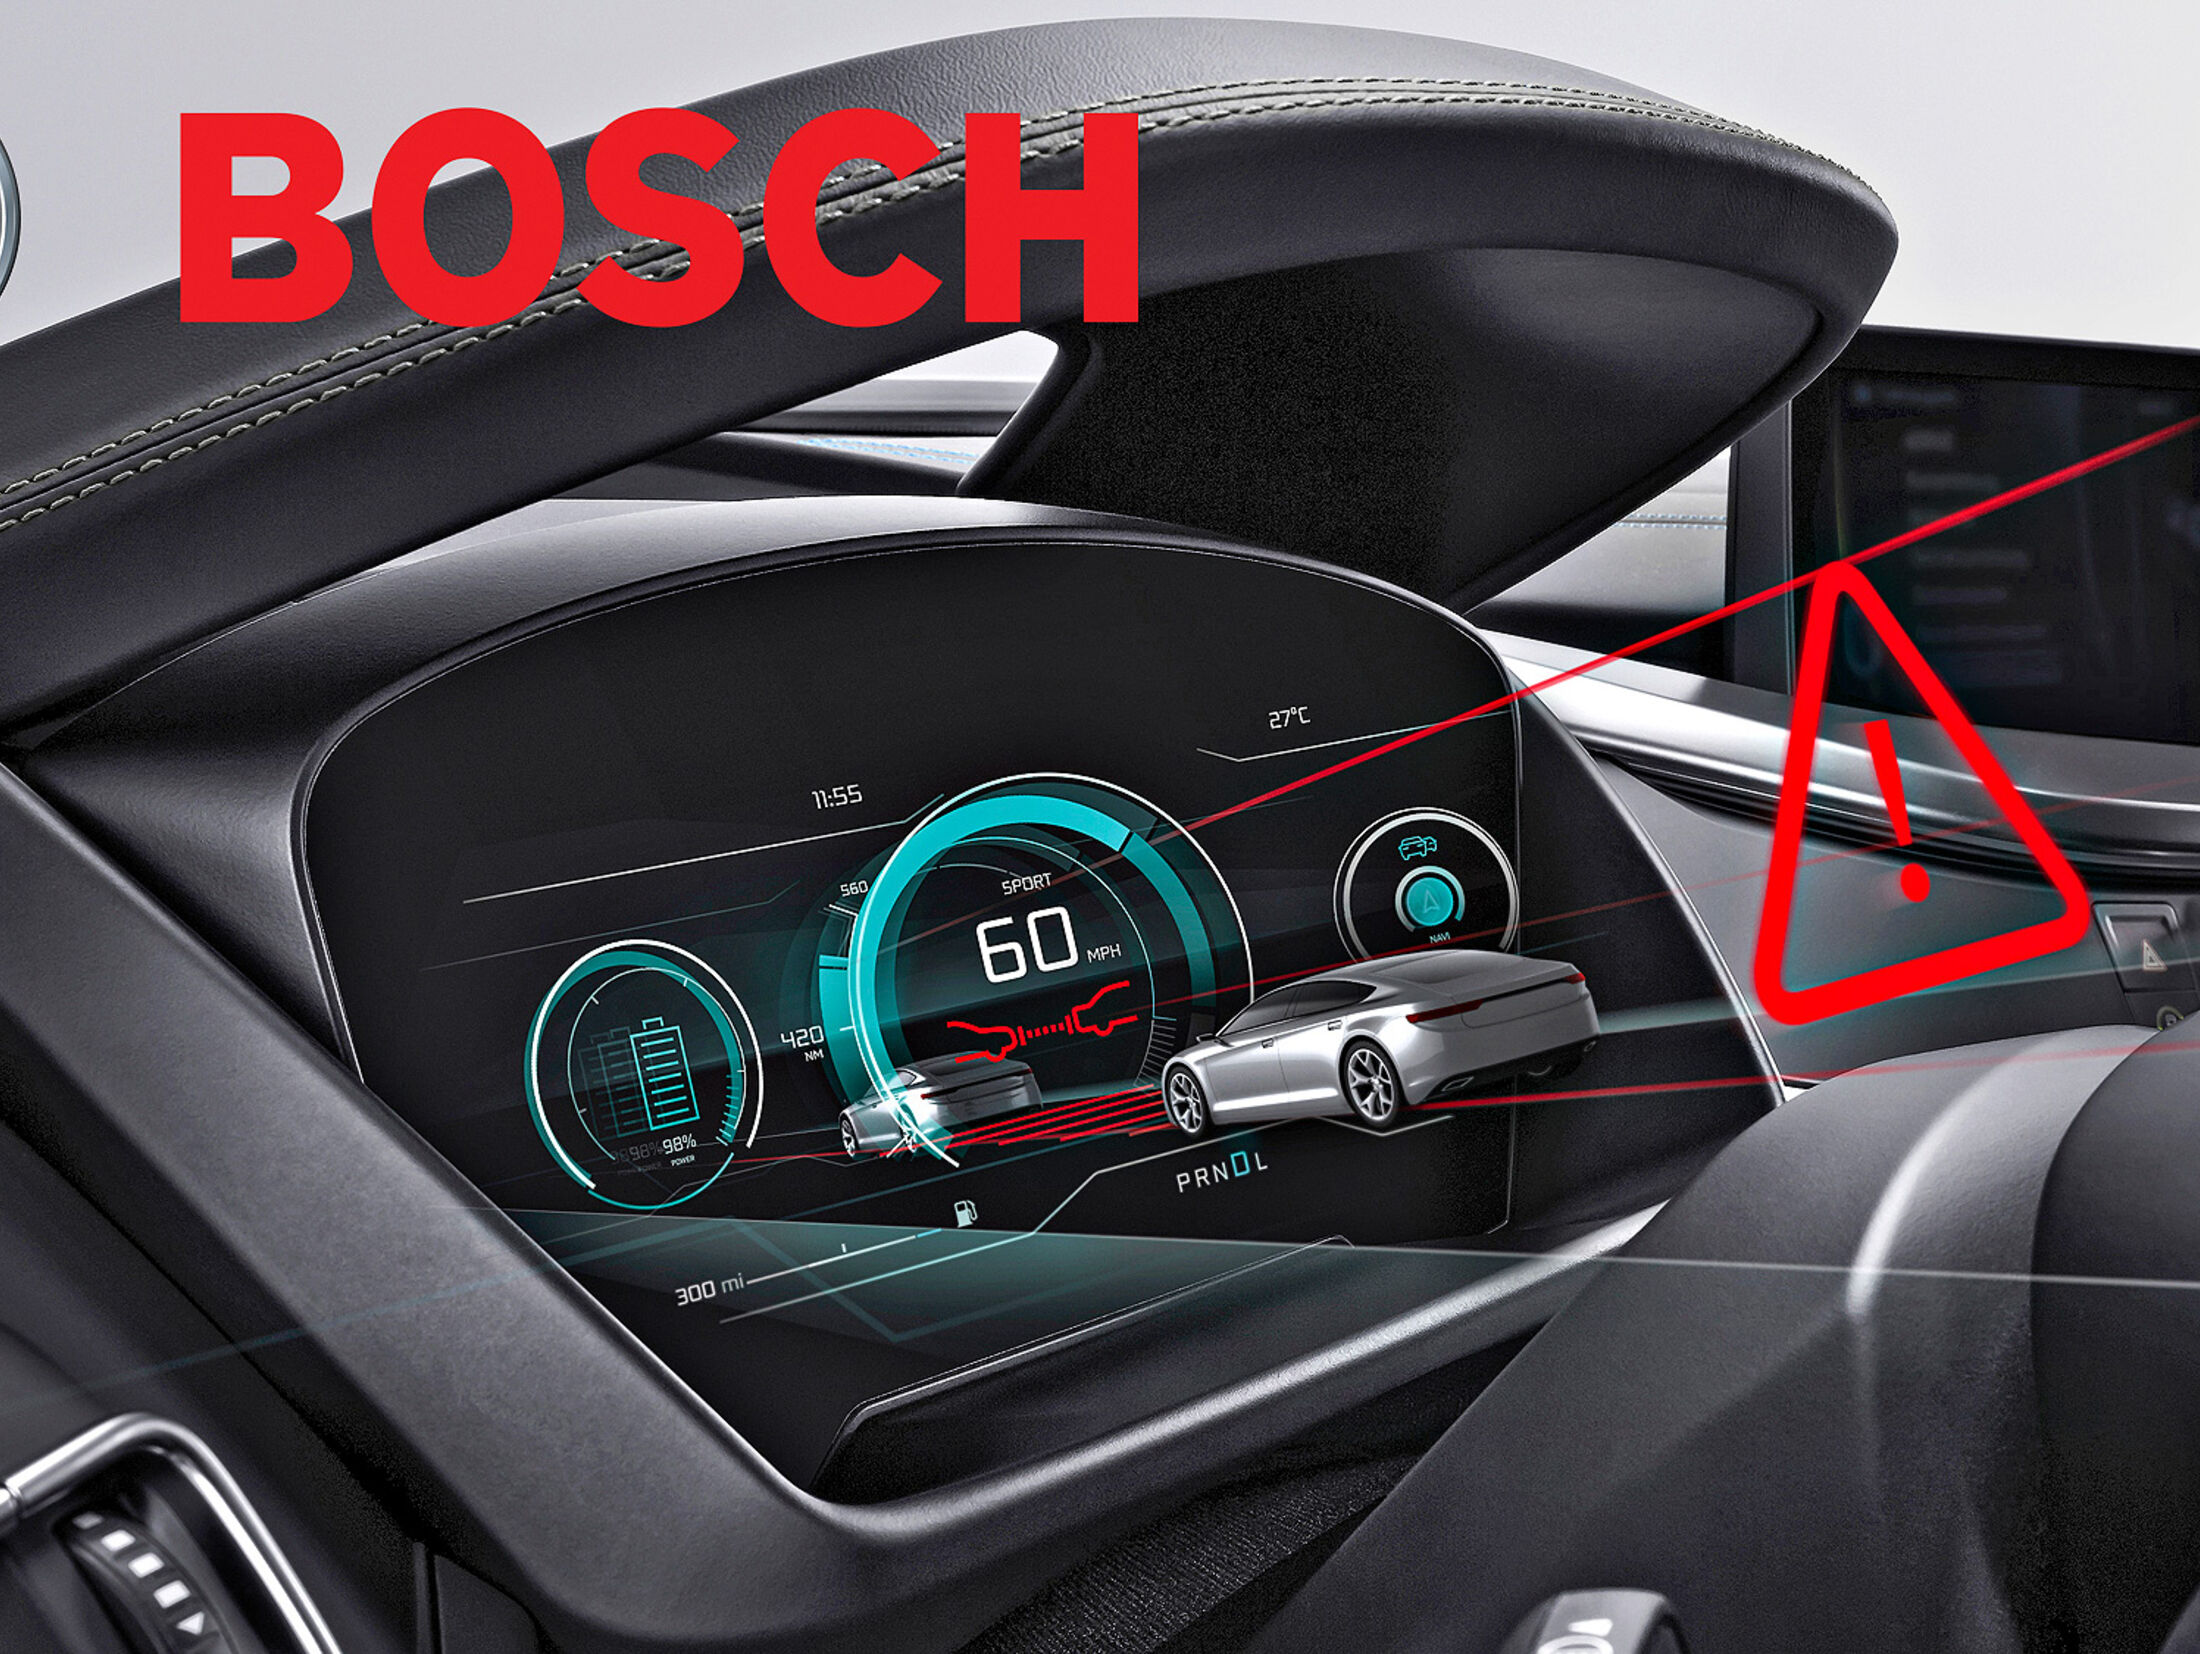 https://imgr1.auto-motor-und-sport.de/Bosch-erklaert-3-D-Display-jsonLd4x3-44a1fd7d-1862824.jpg